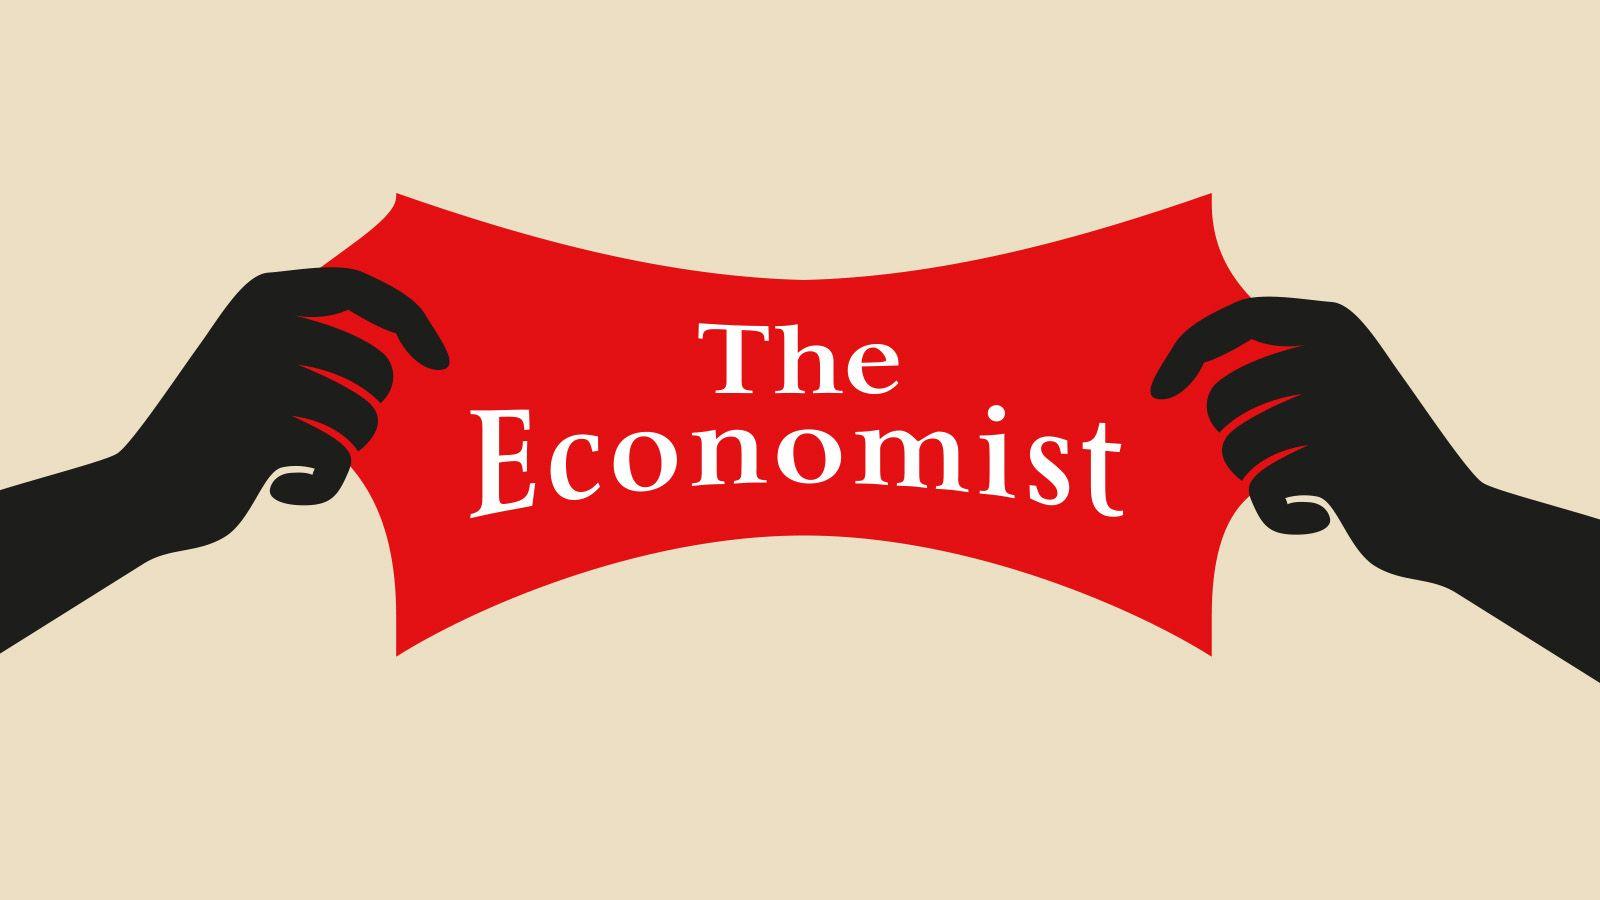 Economist Logo - Is The Economist Left Or Right Wing? Economist Explains Itself